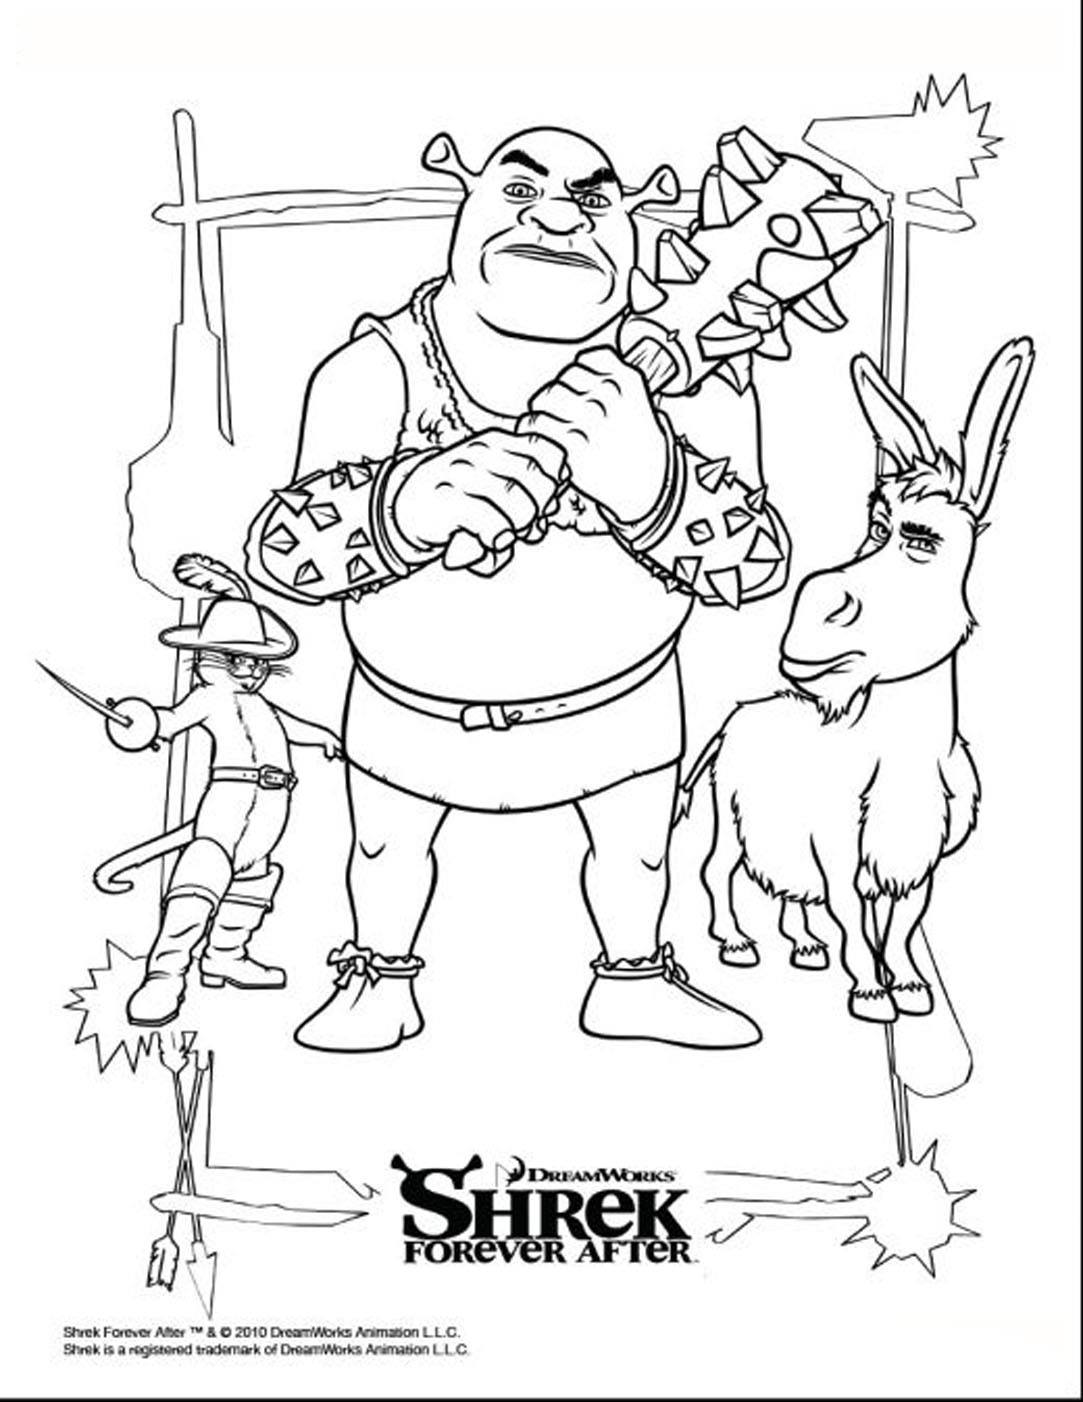 Colagem livre de Shrek 4, com o ogre, o burro e o gatinho